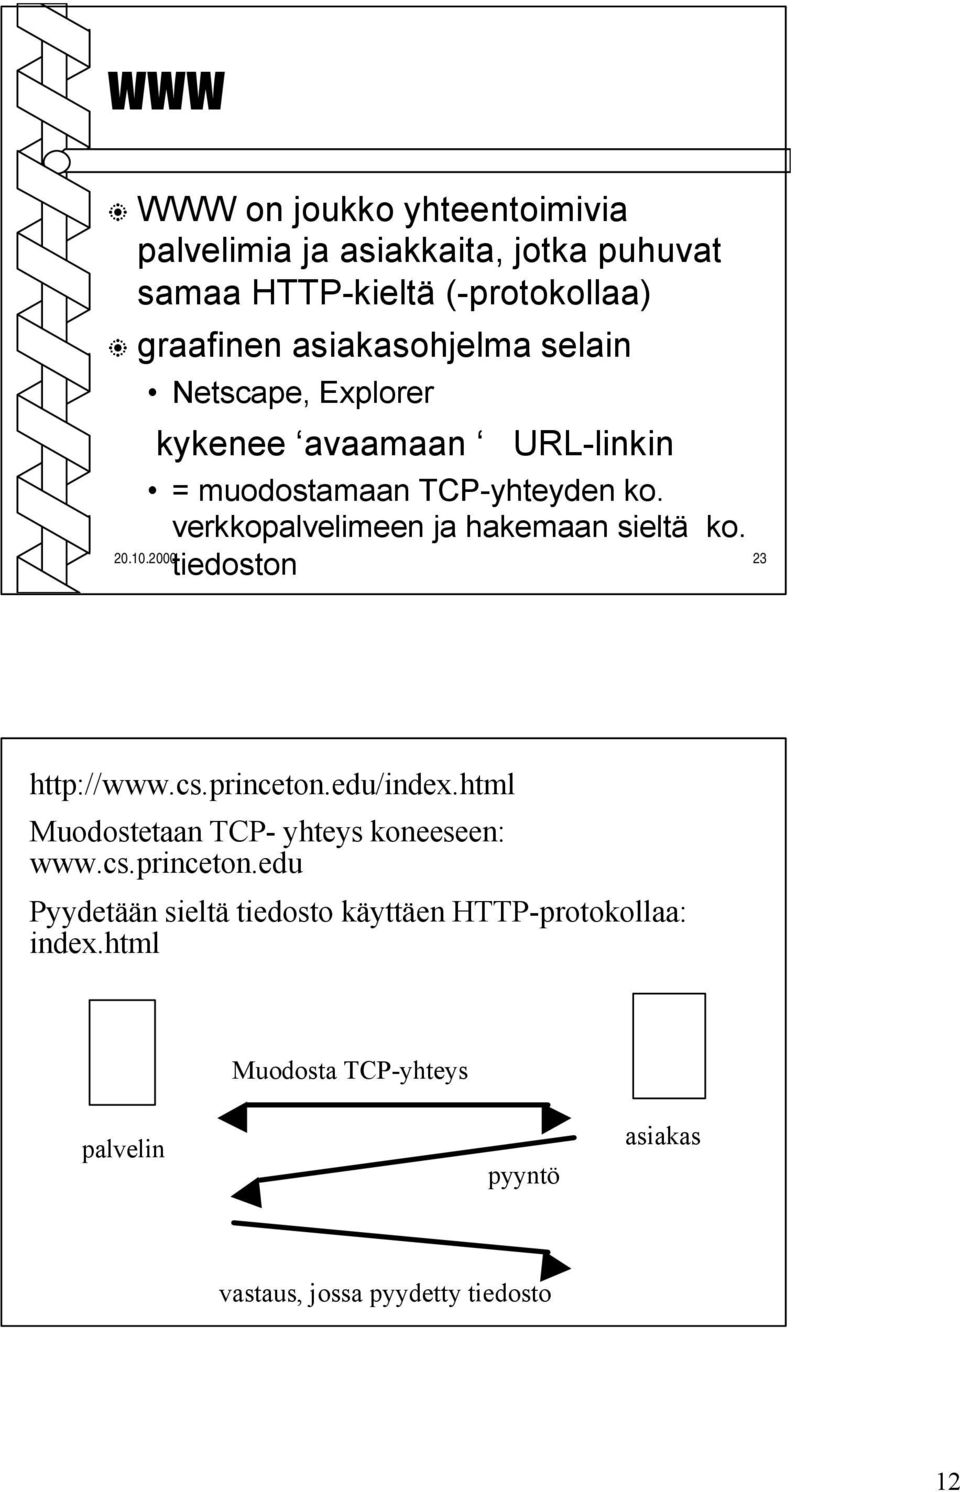 tiedoston 20.10.2000 23 http://www.cs.princeton.edu/index.html Muodostetaan TCP- yhteys koneeseen: www.cs.princeton.edu Pyydetään sieltä tiedosto käyttäen HTTP-protokollaa: index.